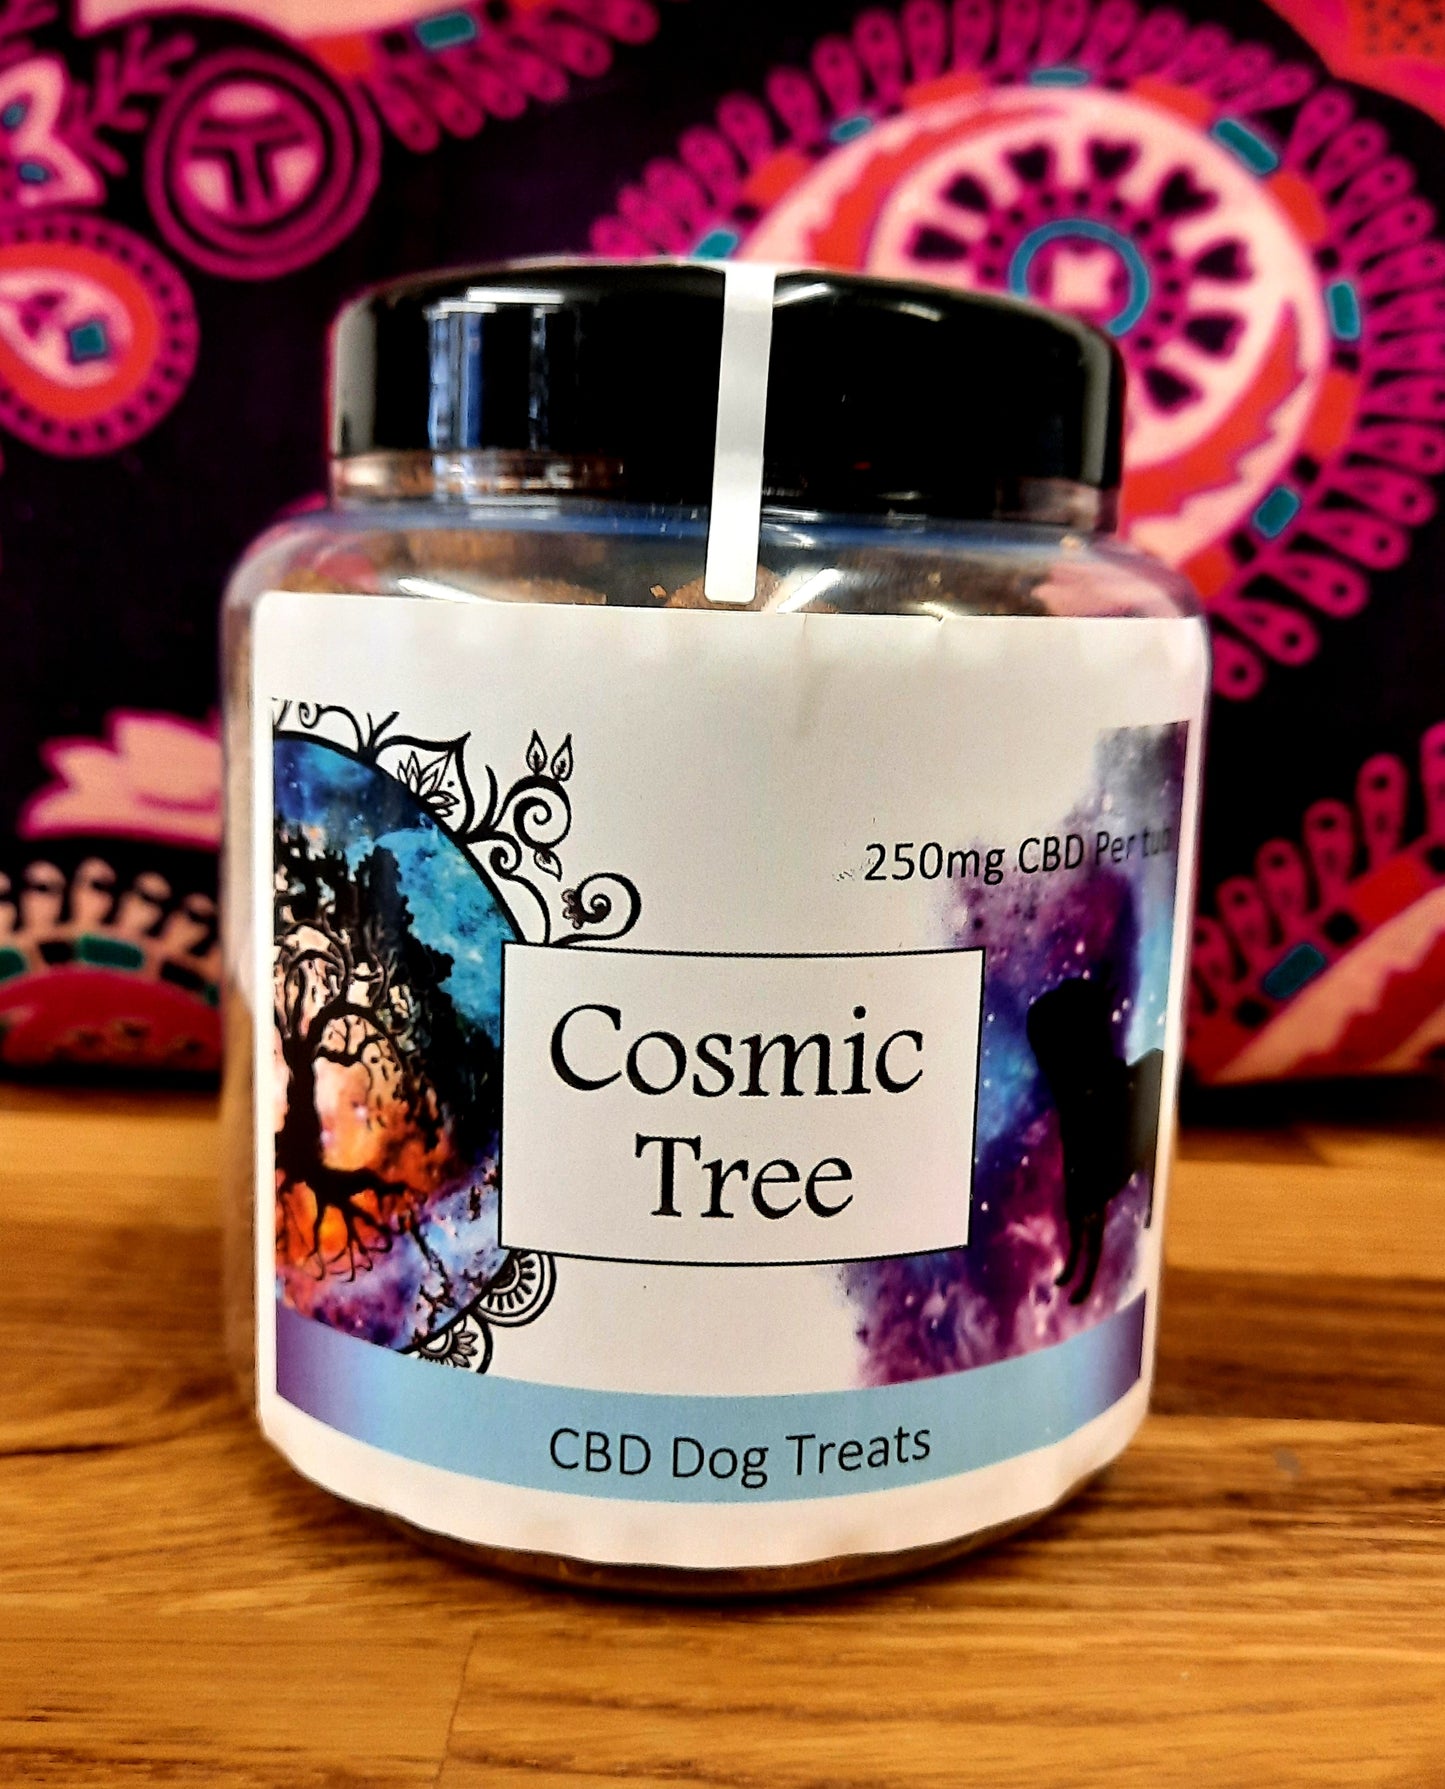 Cosmic tree 250mg CBD meaty dog treats